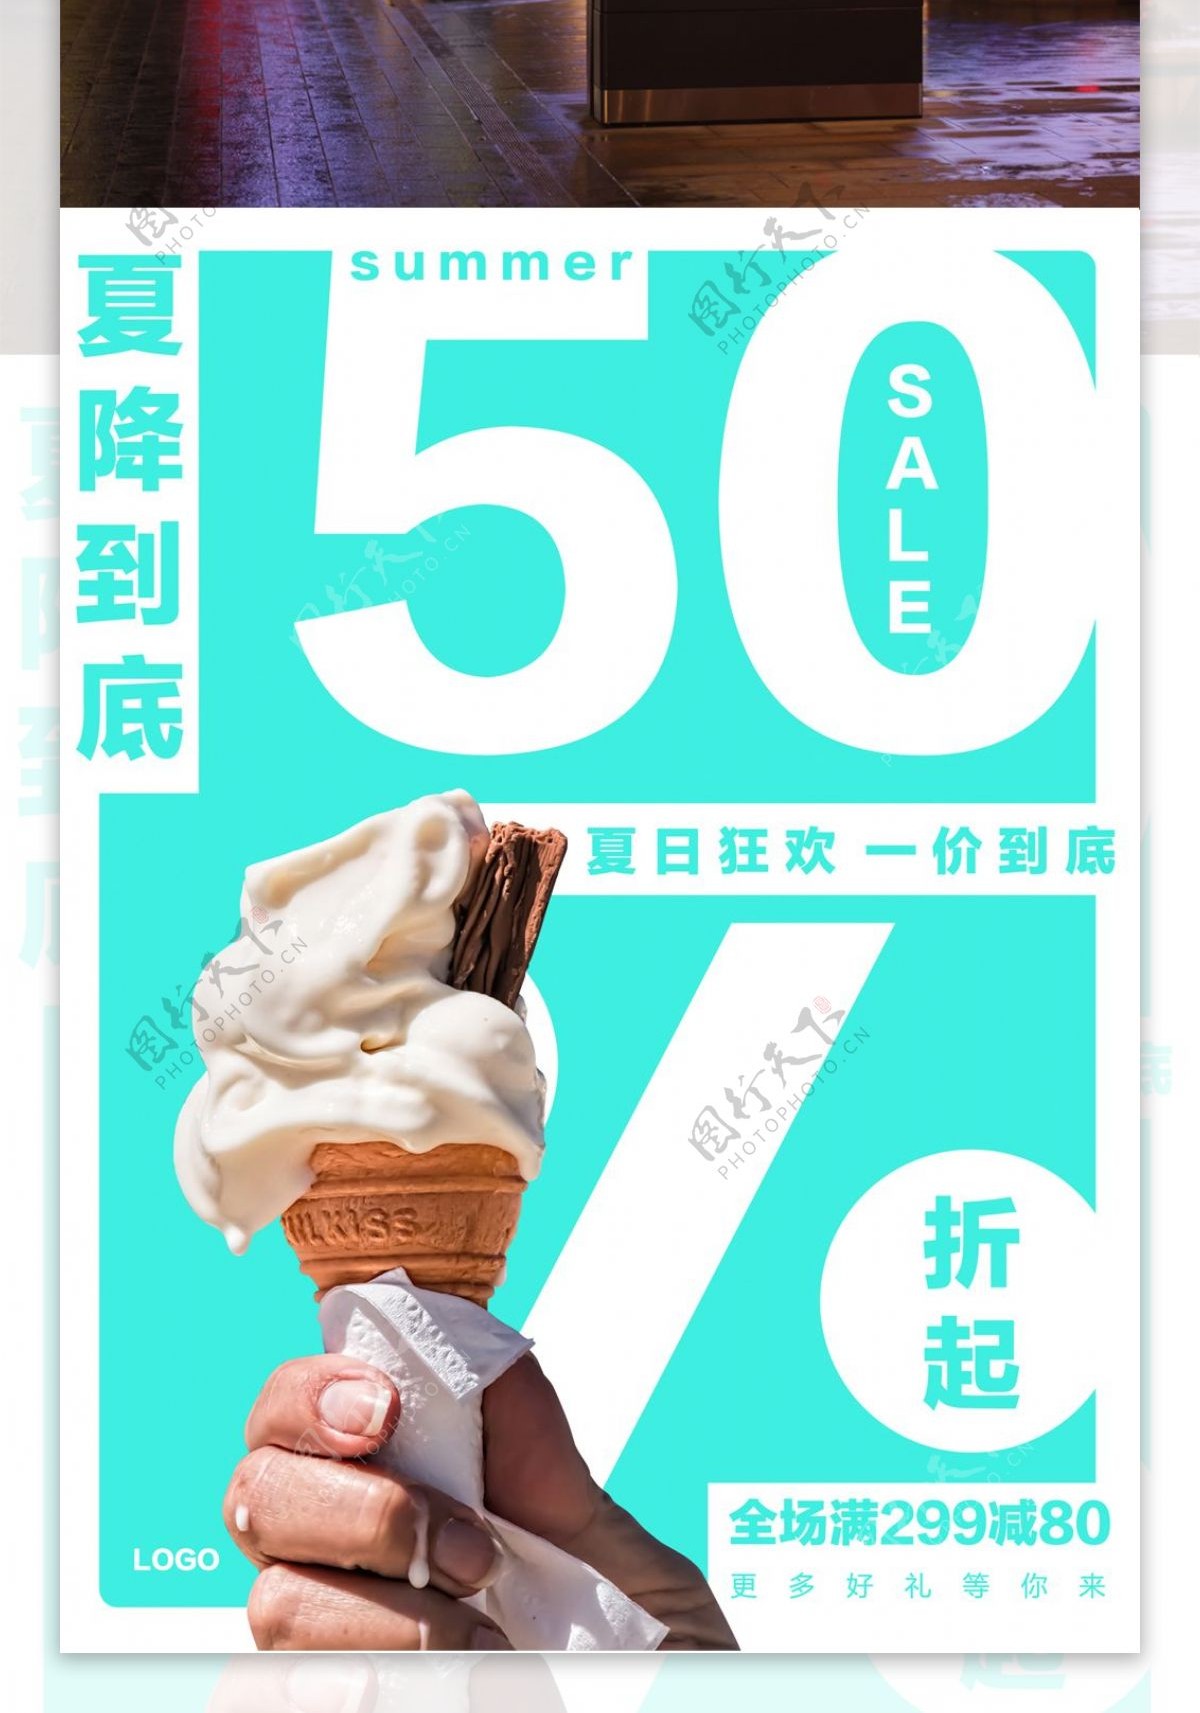 简约大气夏日促销海报创意冰淇淋店甜筒海报